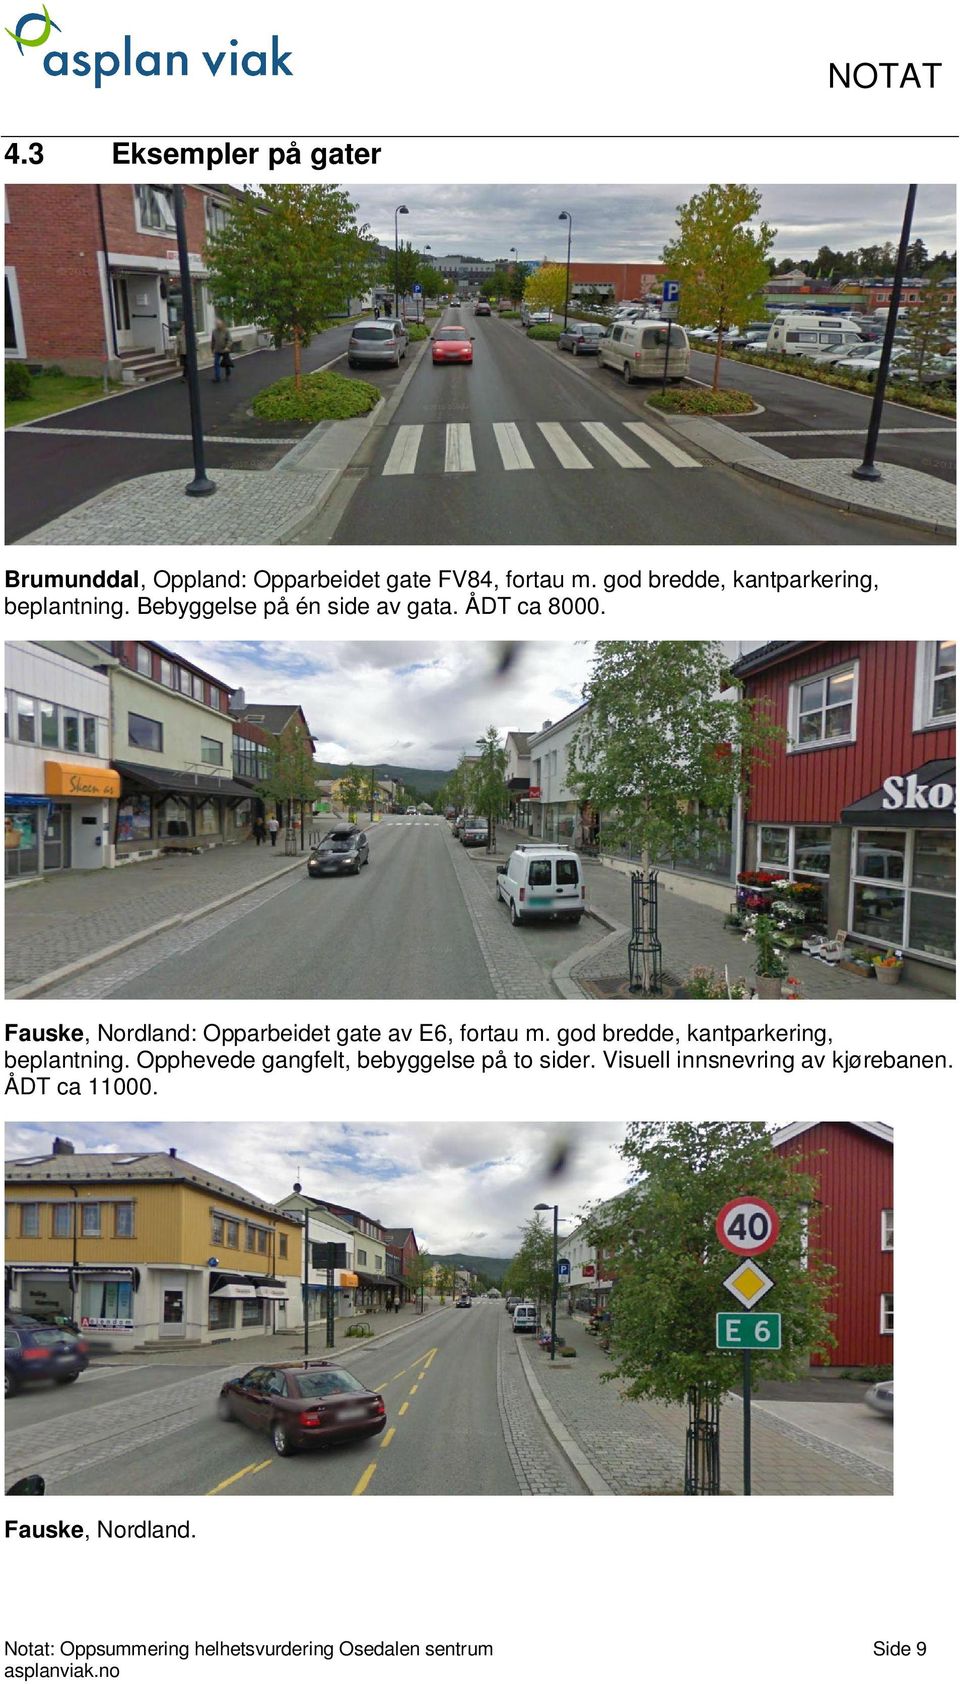 Fauske, Nordland: Opparbeidet gate av E6, fortau m. god bredde, kantparkering, beplantning.